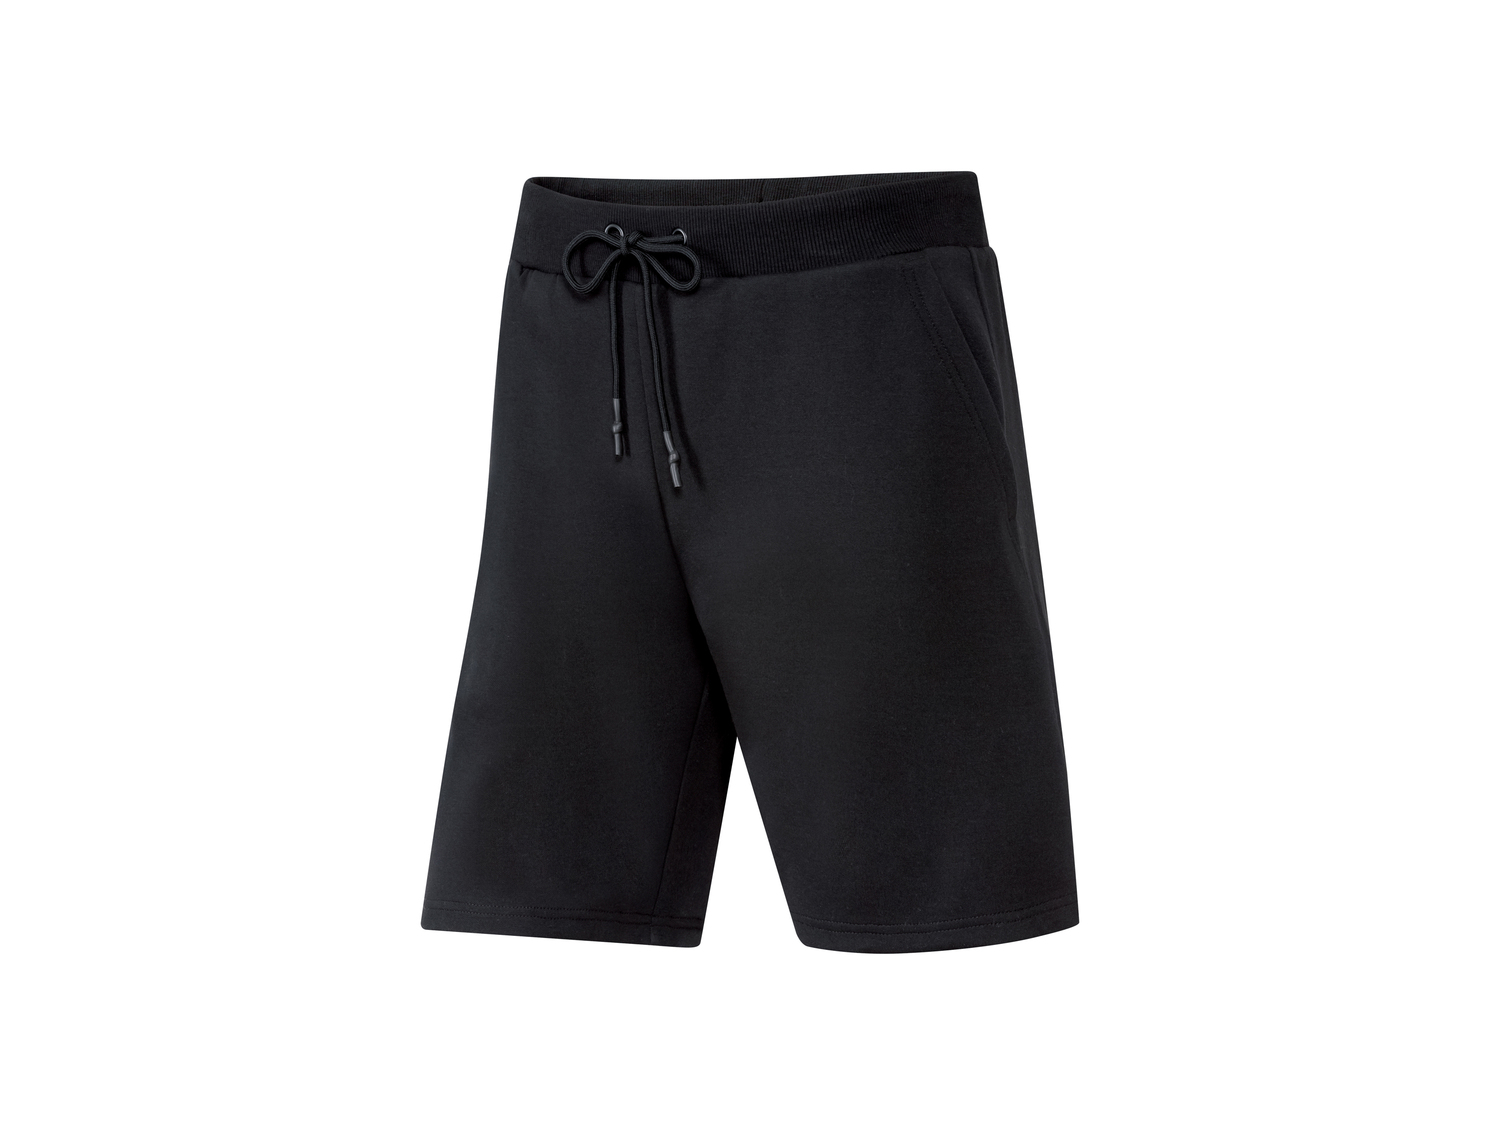 Pantaloncini sportivi da uomo Crivit, prezzo 6.99 &#8364; 
Misure: S-XL
Taglie ...